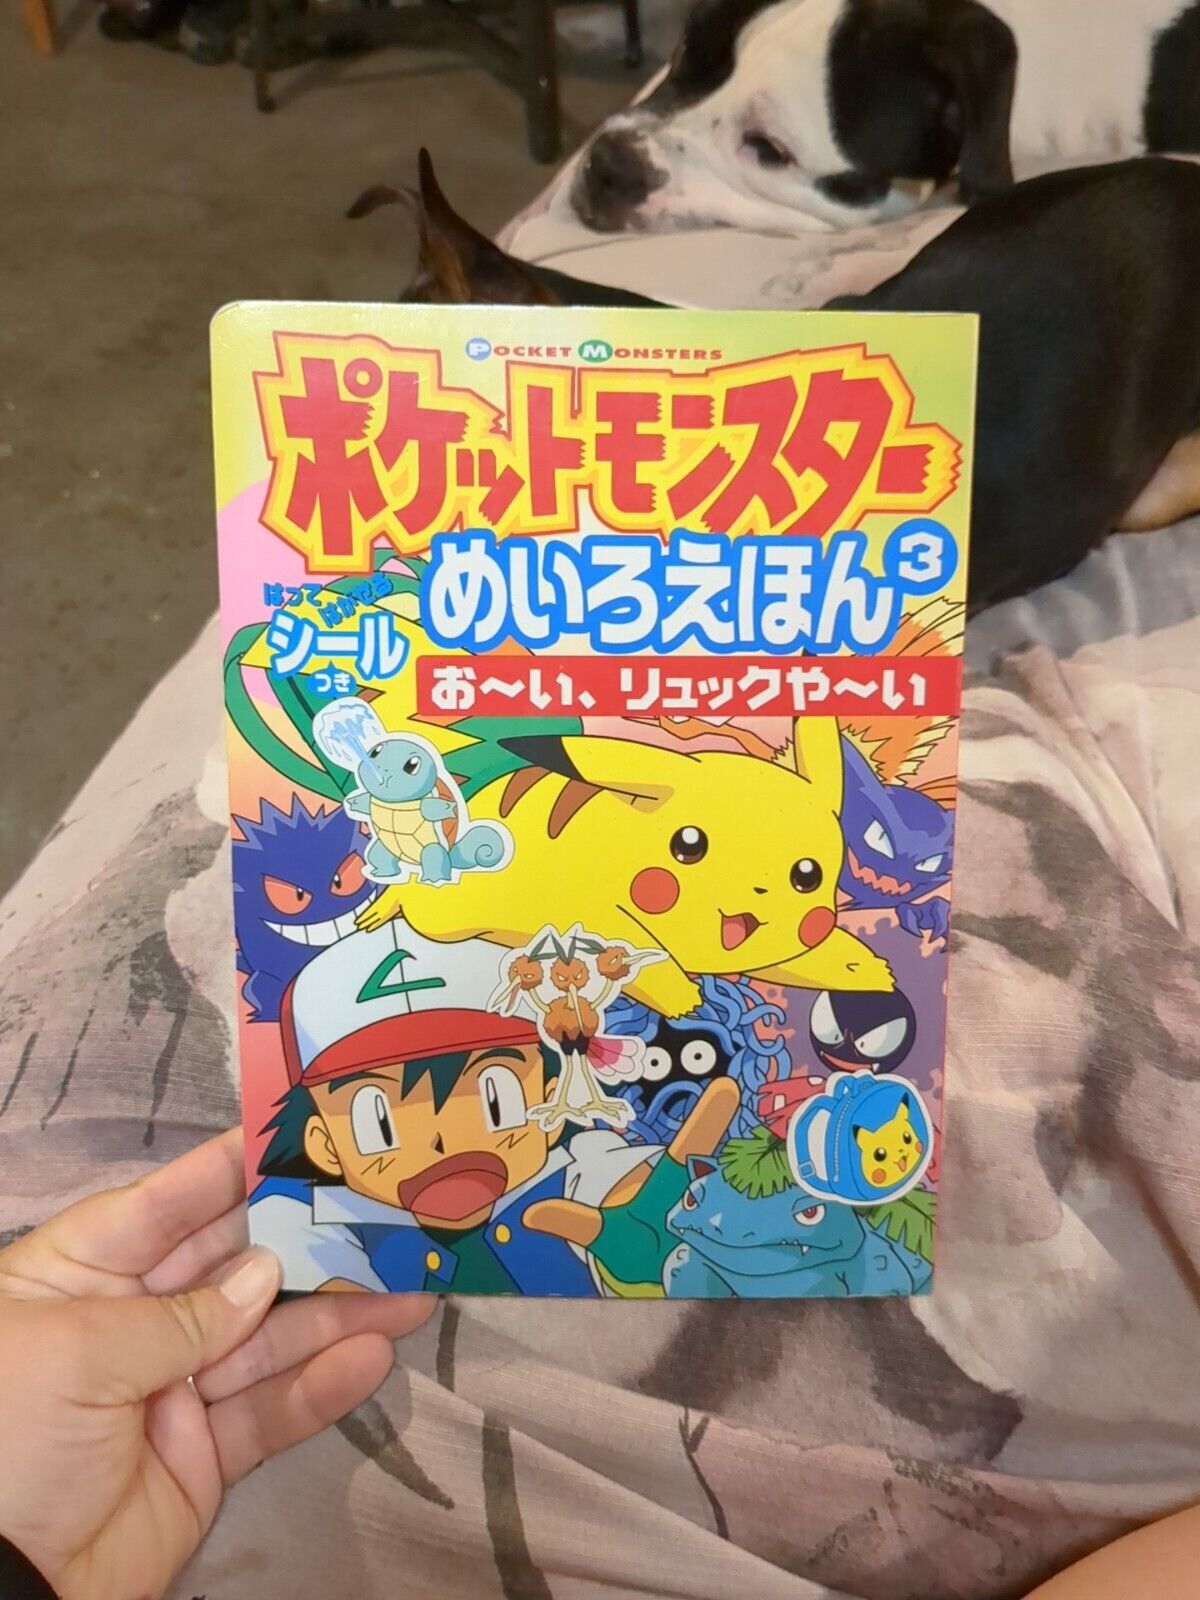 1999 Japanese Pokemon Pocket Monster Book